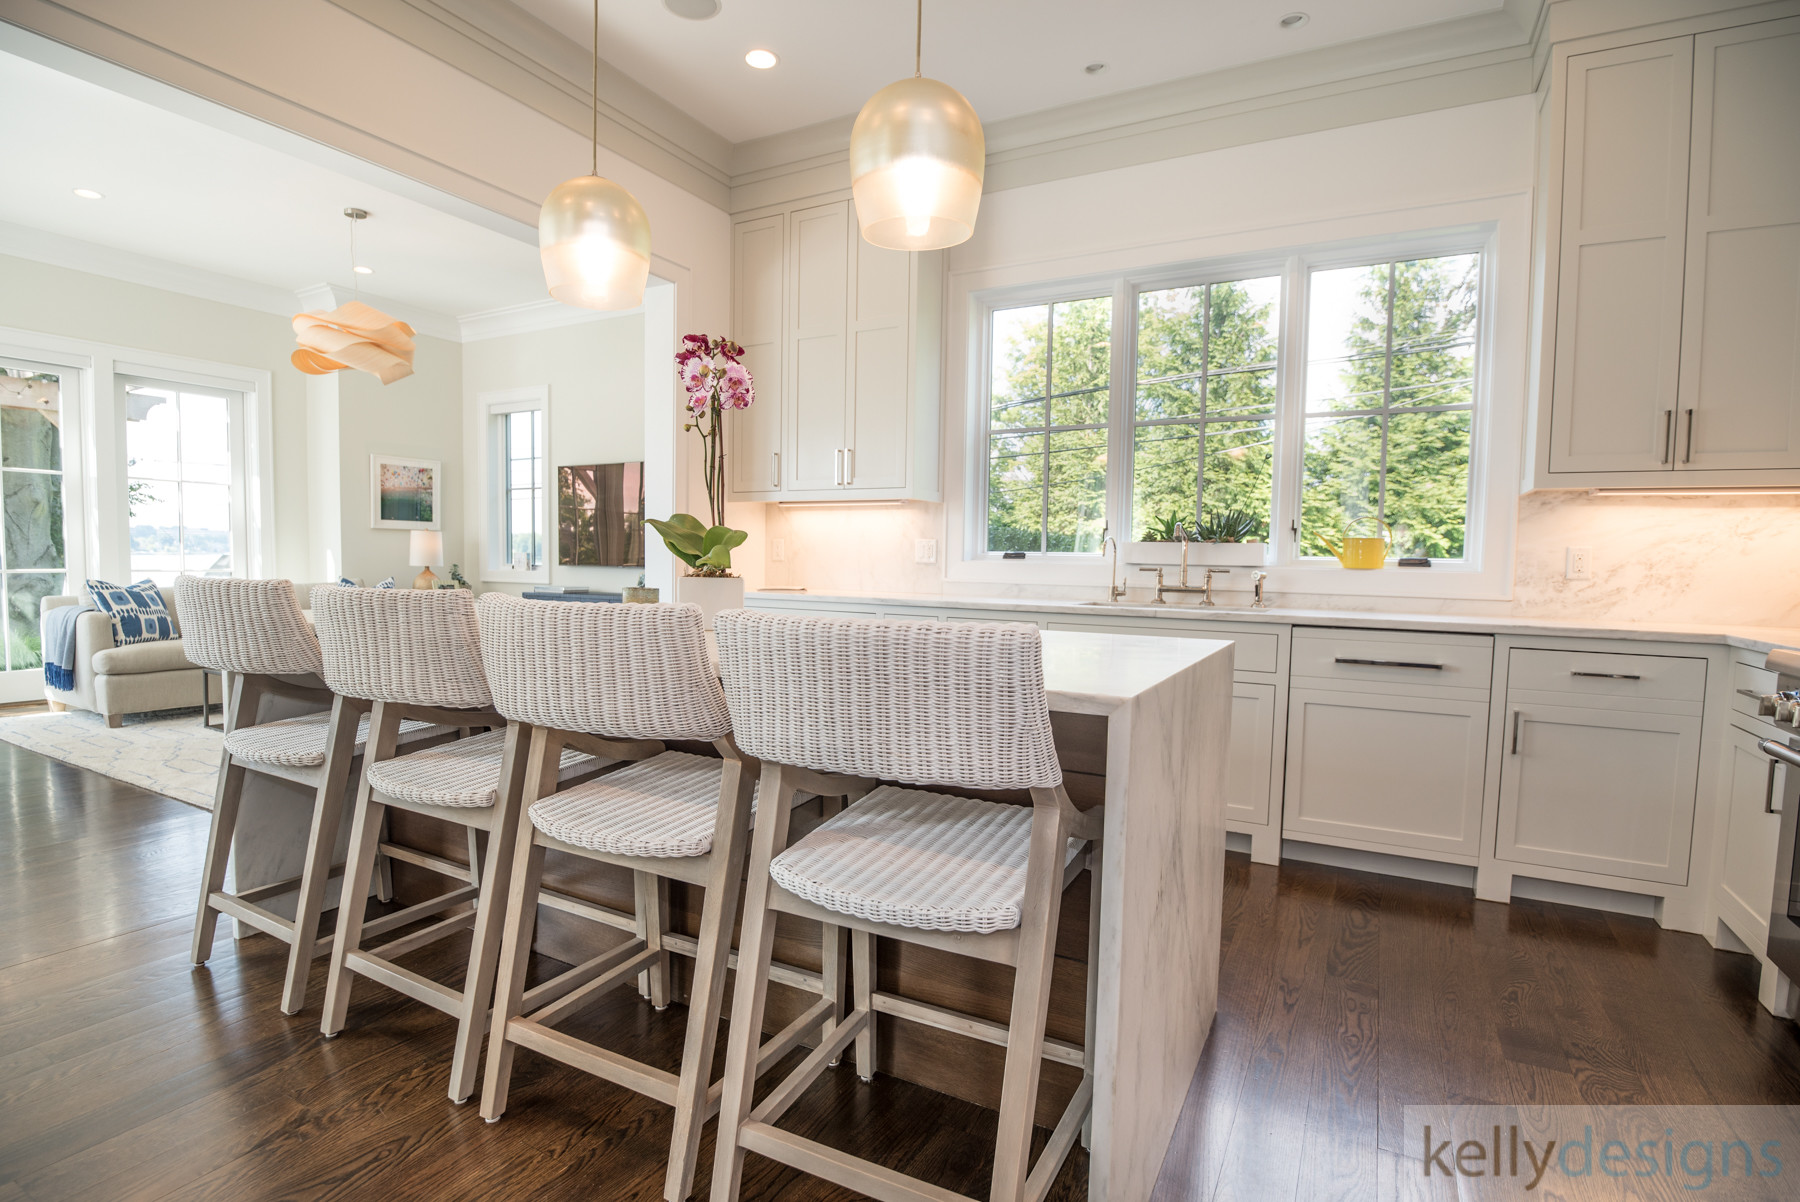 Brush Island Kitchen   Interior Design By Kellydesigns